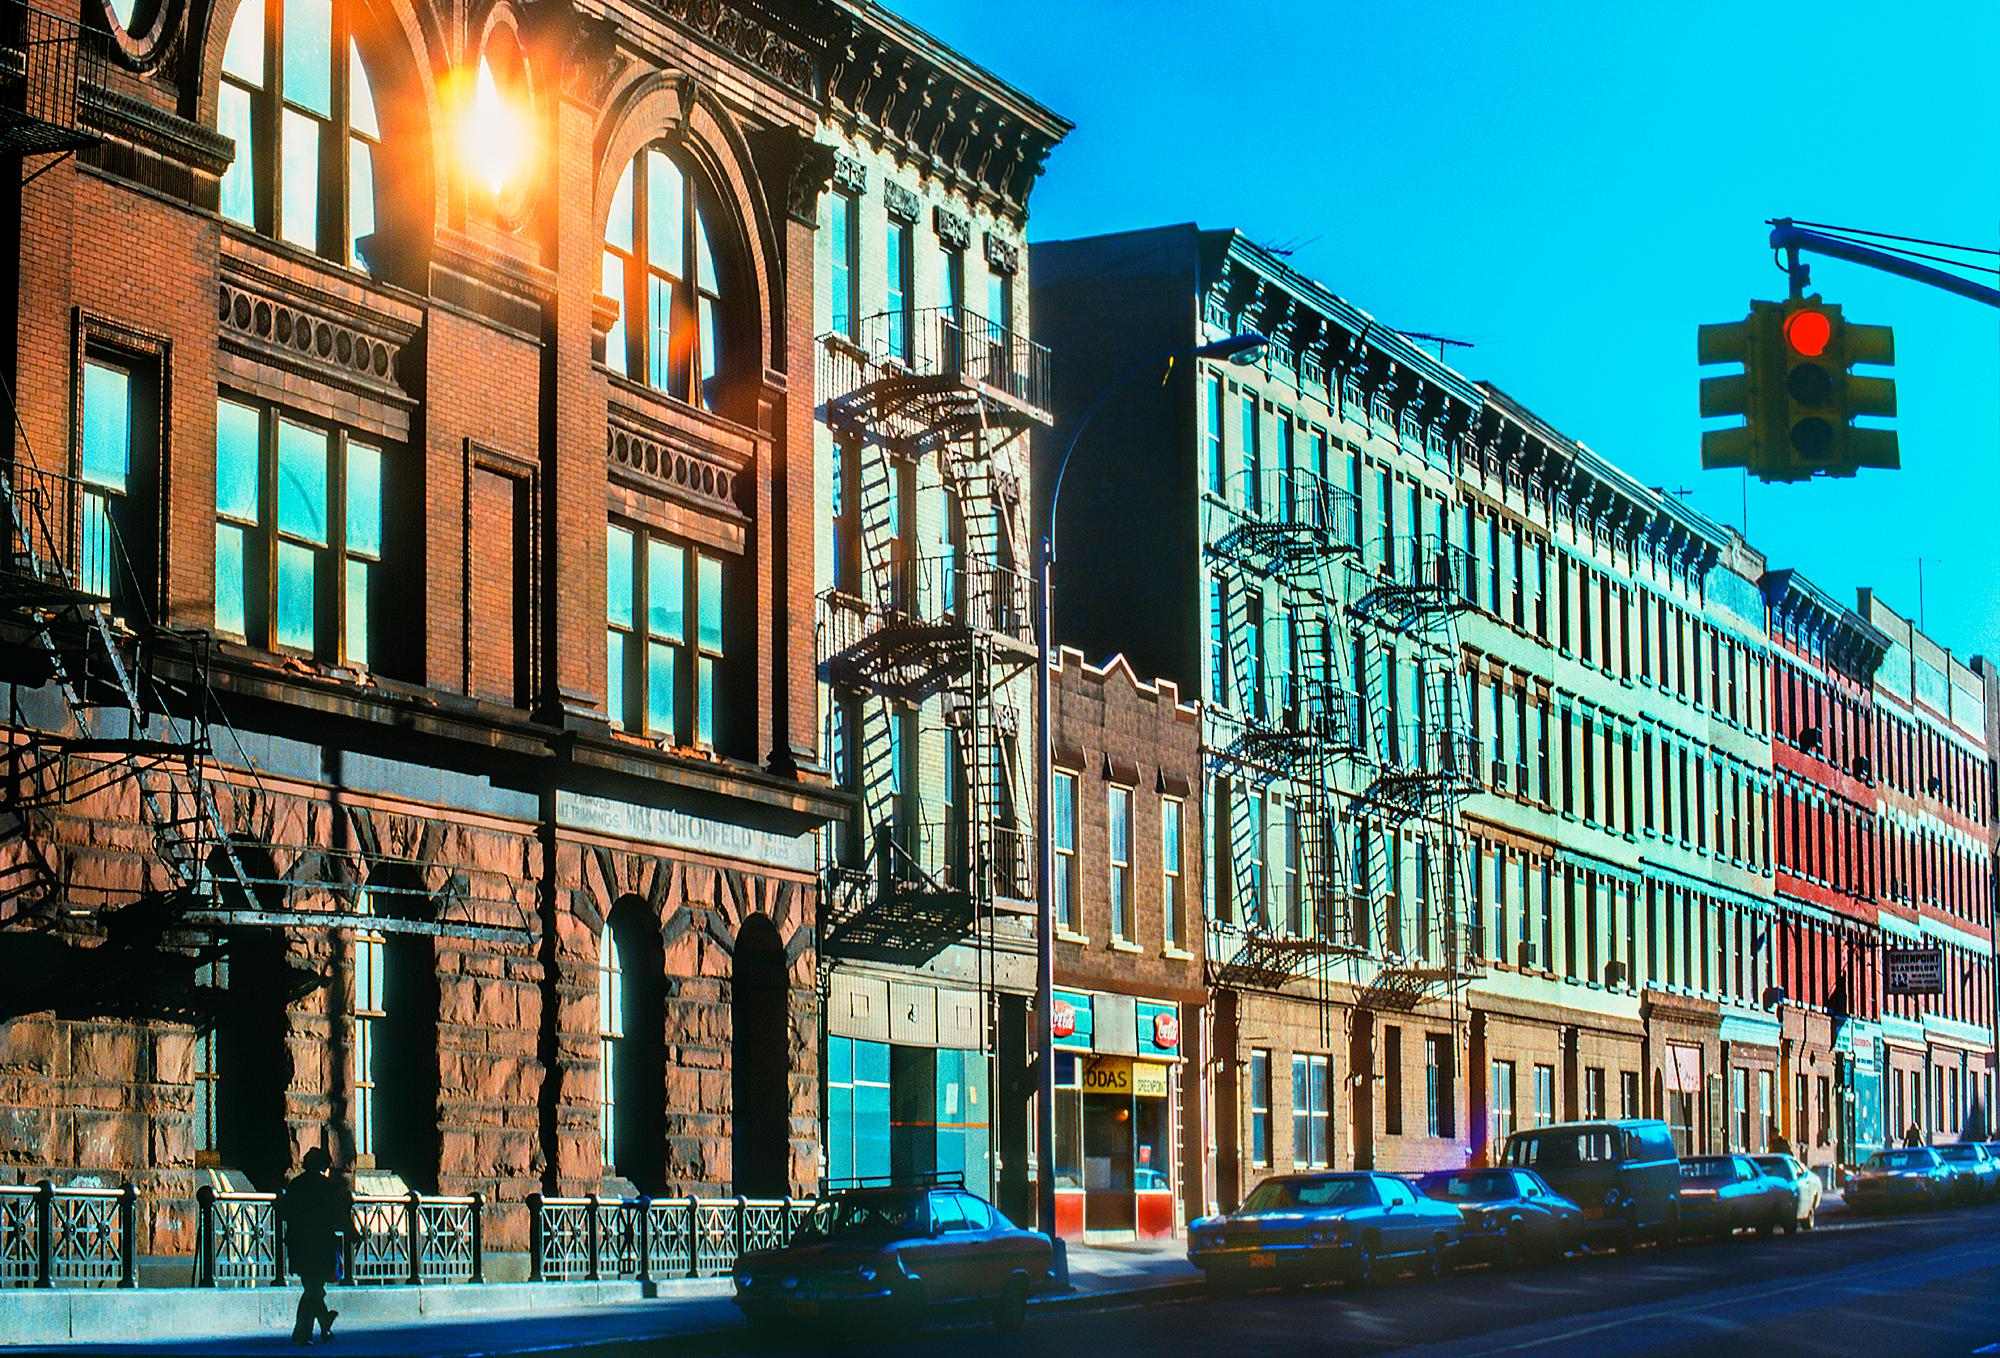 Mitchell Funk Color Photograph – Brooklyn Row Houses mit Candy Store und Gebäuden aus dem 19. Jahrhundert